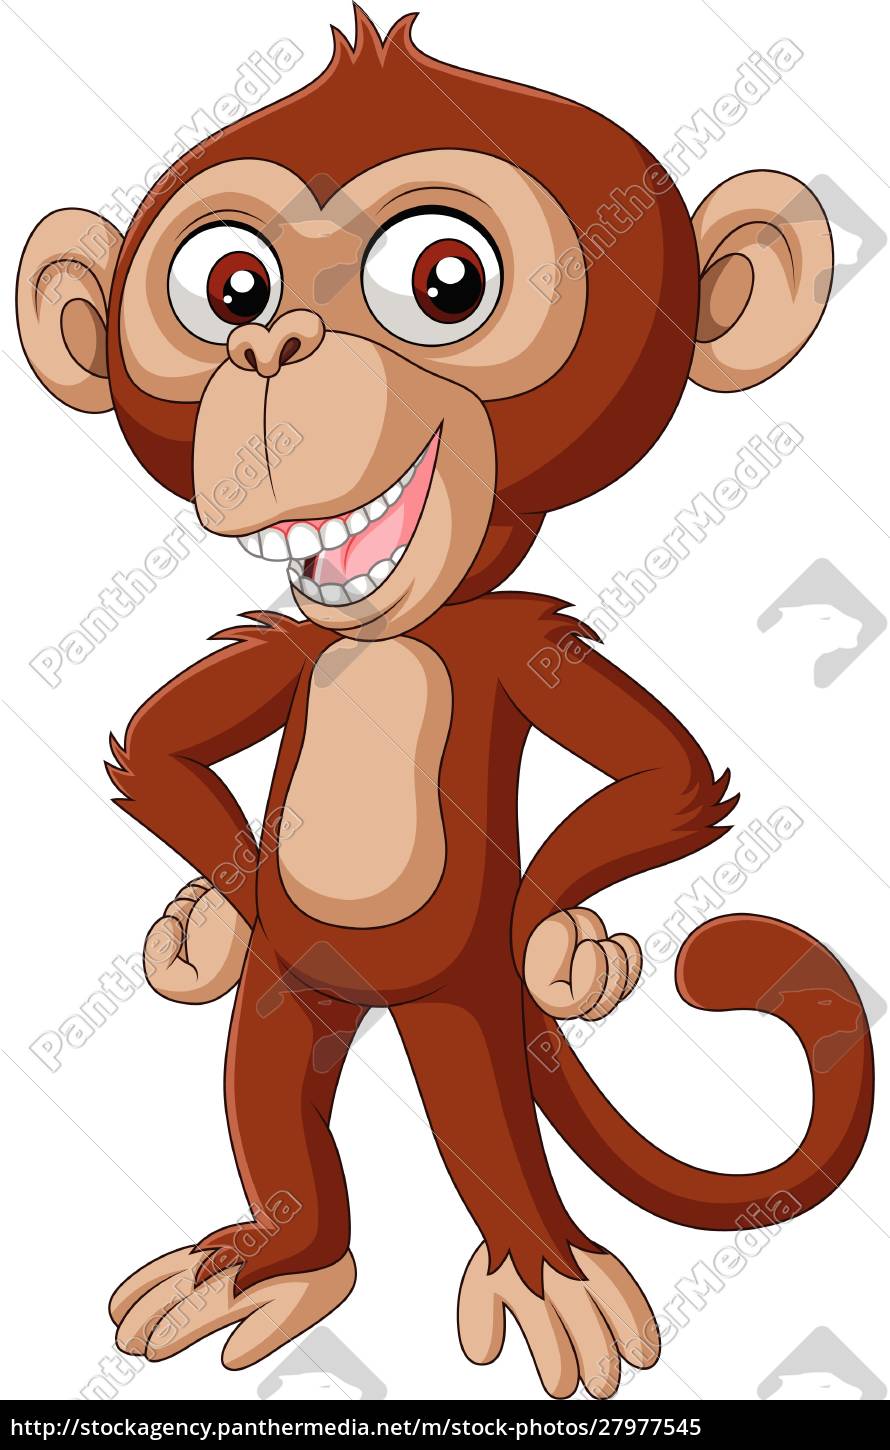 Desenho de macaco bebê fofo